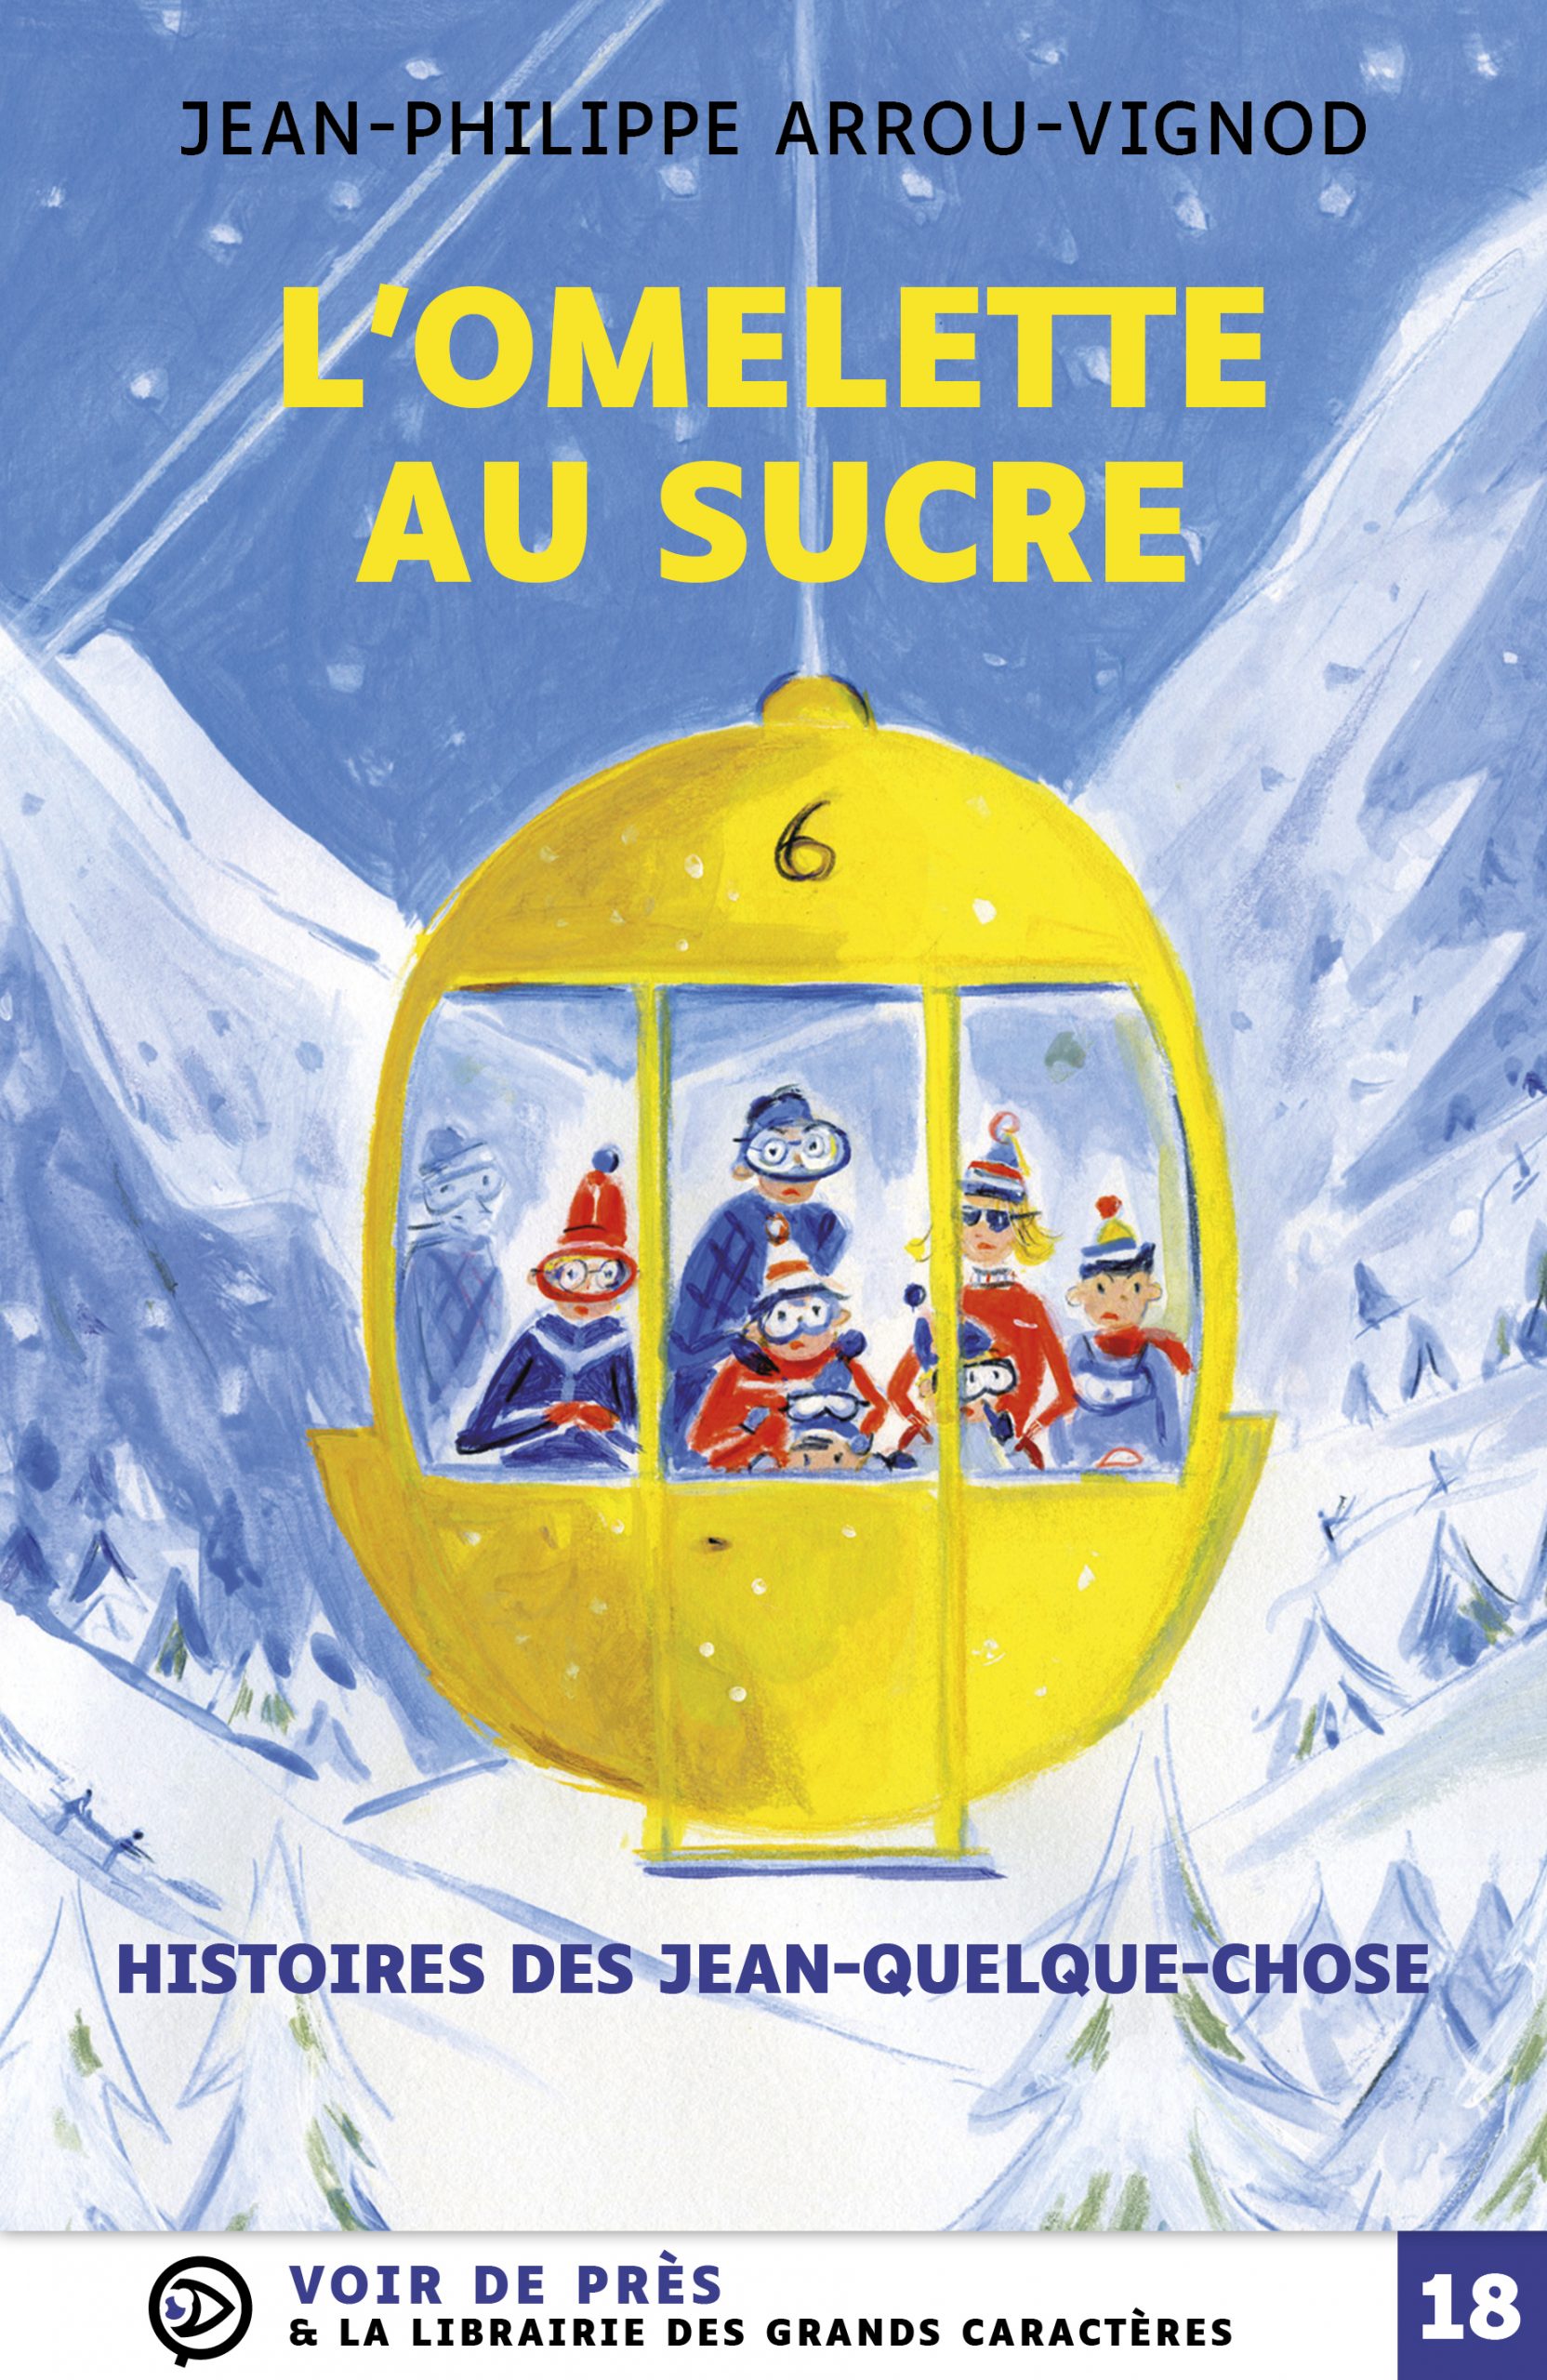 Couverture du livre en grands caractères L'omelette au sucre - Histoires des Jean-quelque-chose de Jean-Philippe Arrou-Vignod